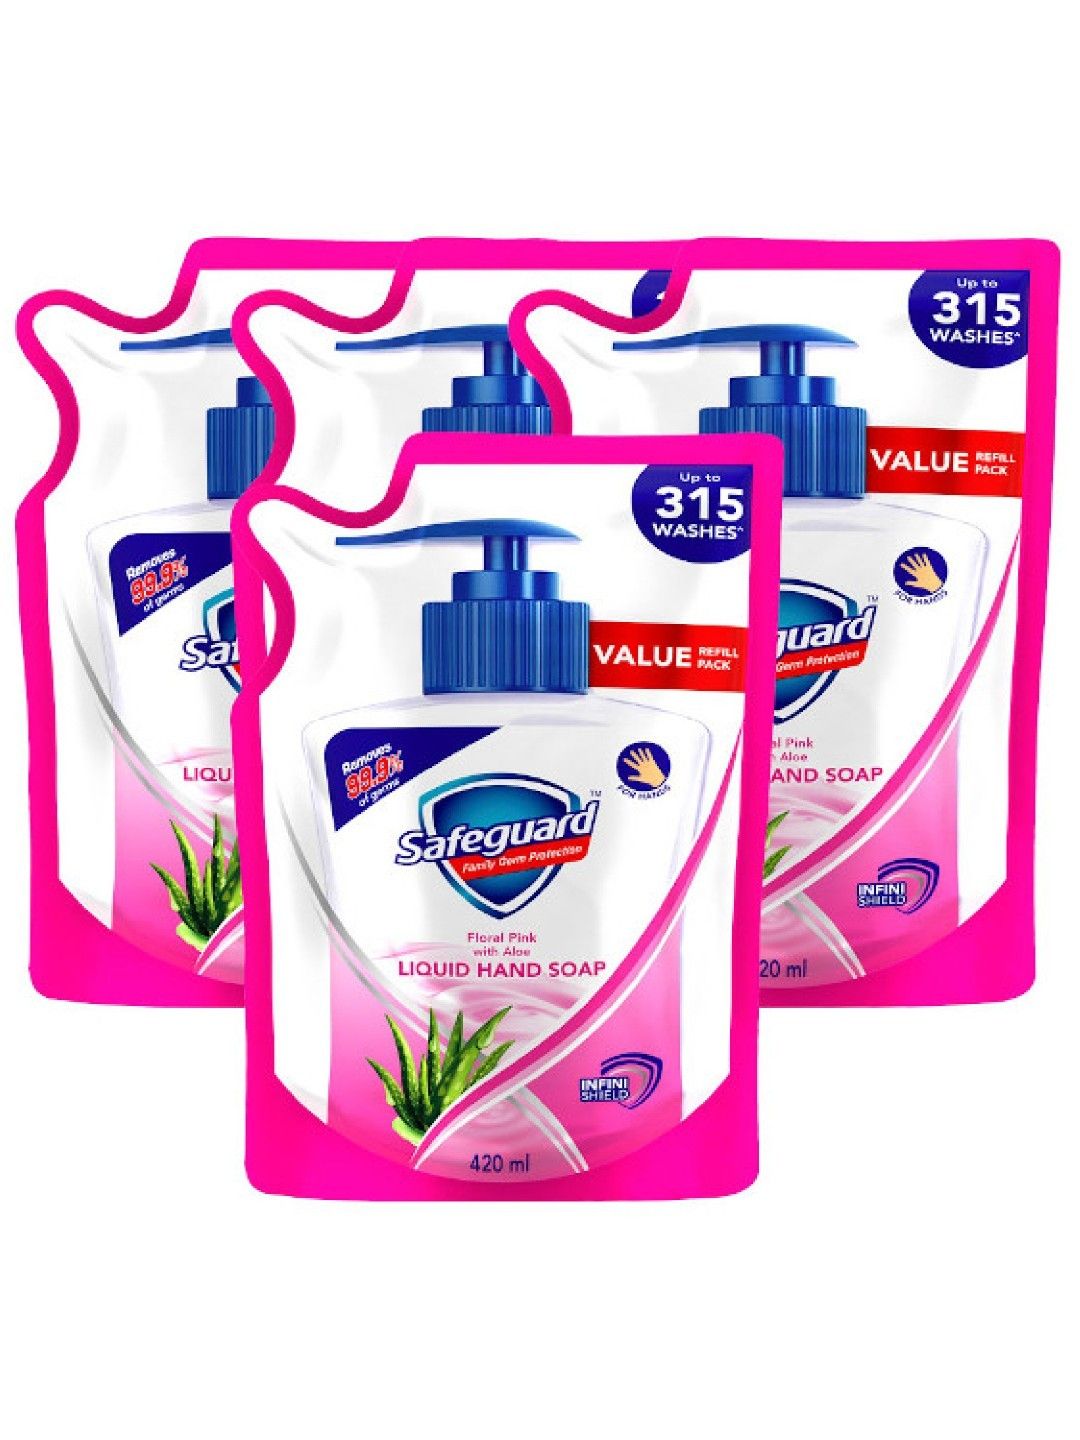 Safeguard Liquid Hand Soap Pink Refill 4-pack (420ml)